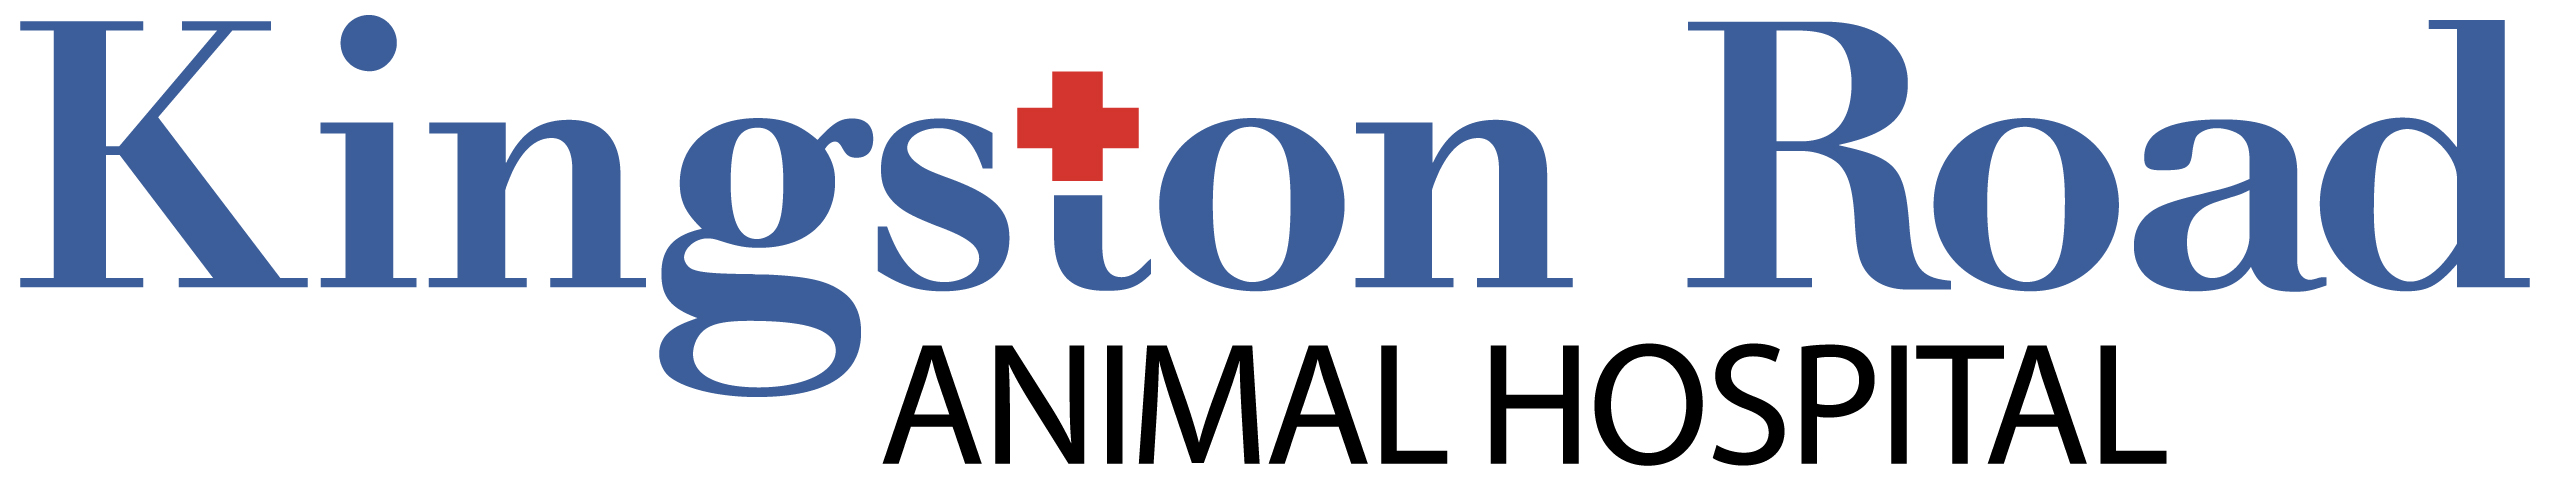 Kingston Road Animal Hospital